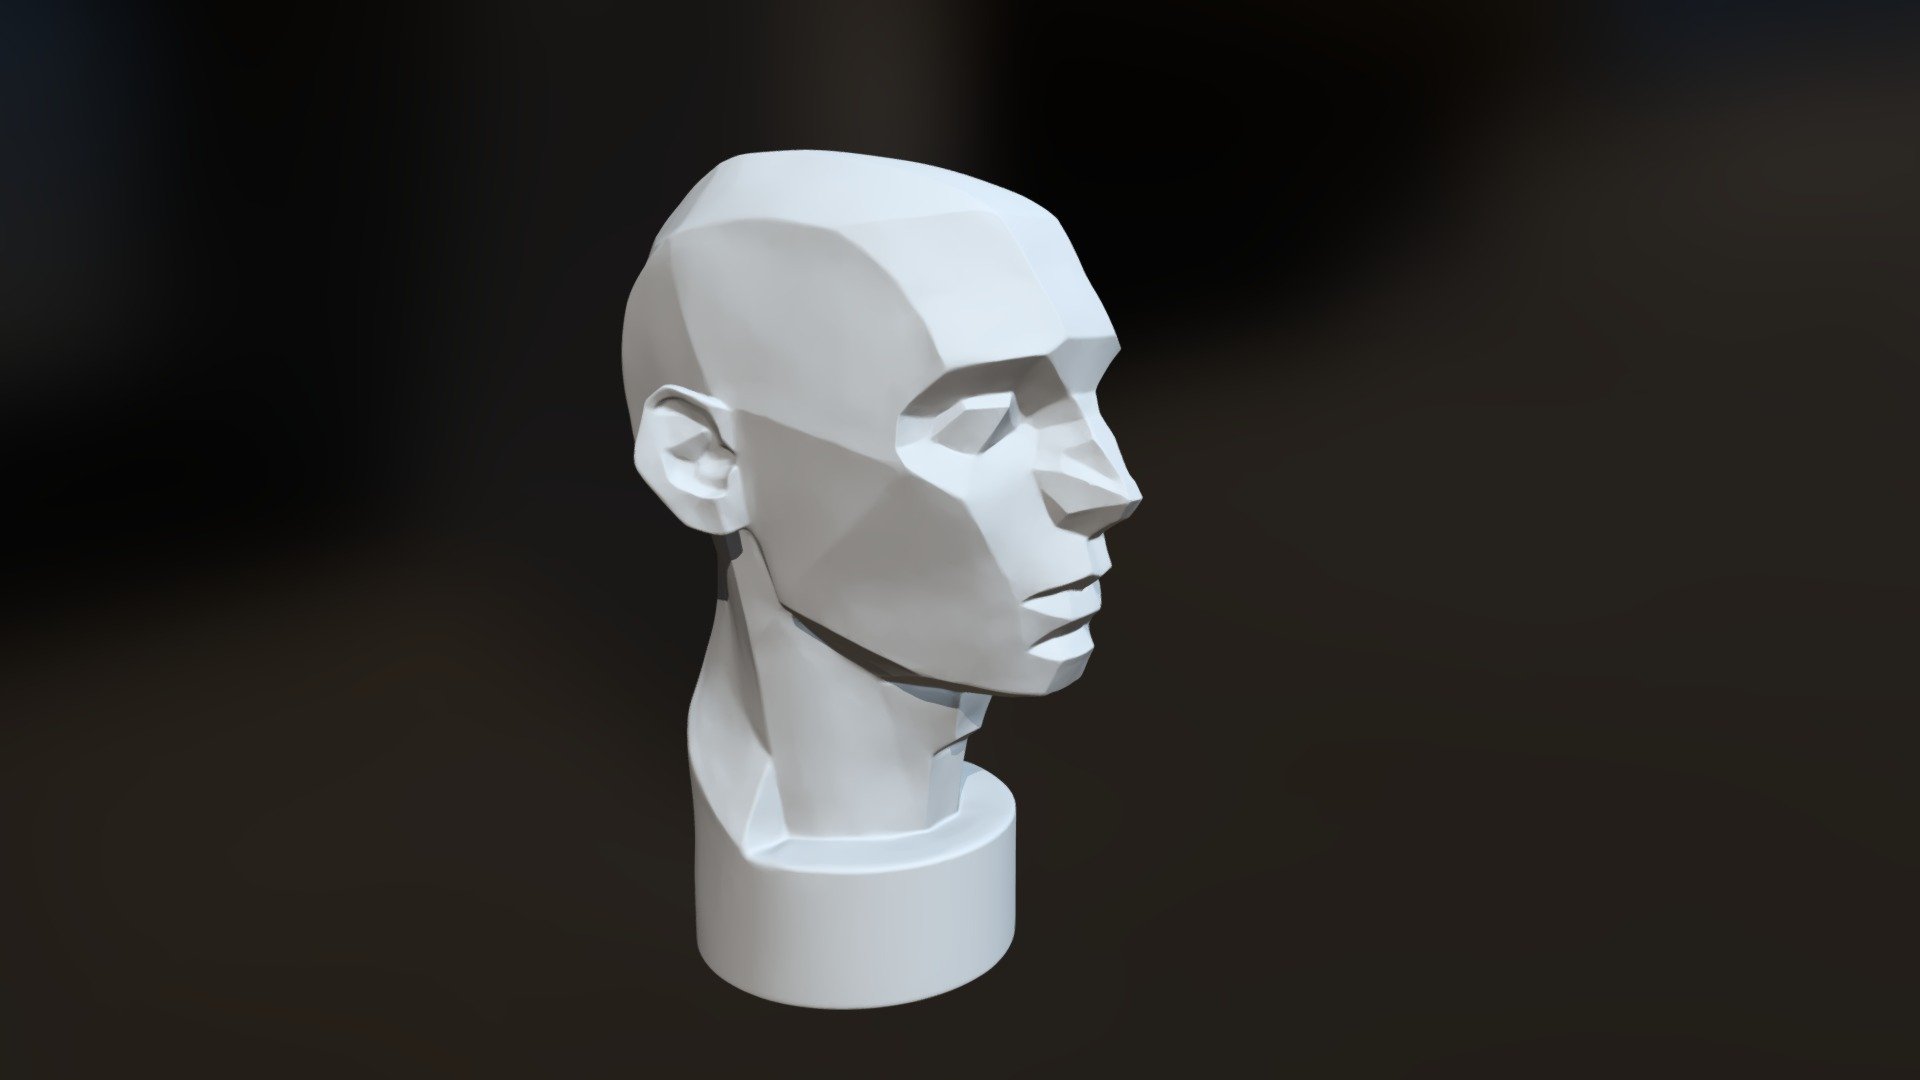 Asaro Head - 3D model by fabianoaraujo 3d model